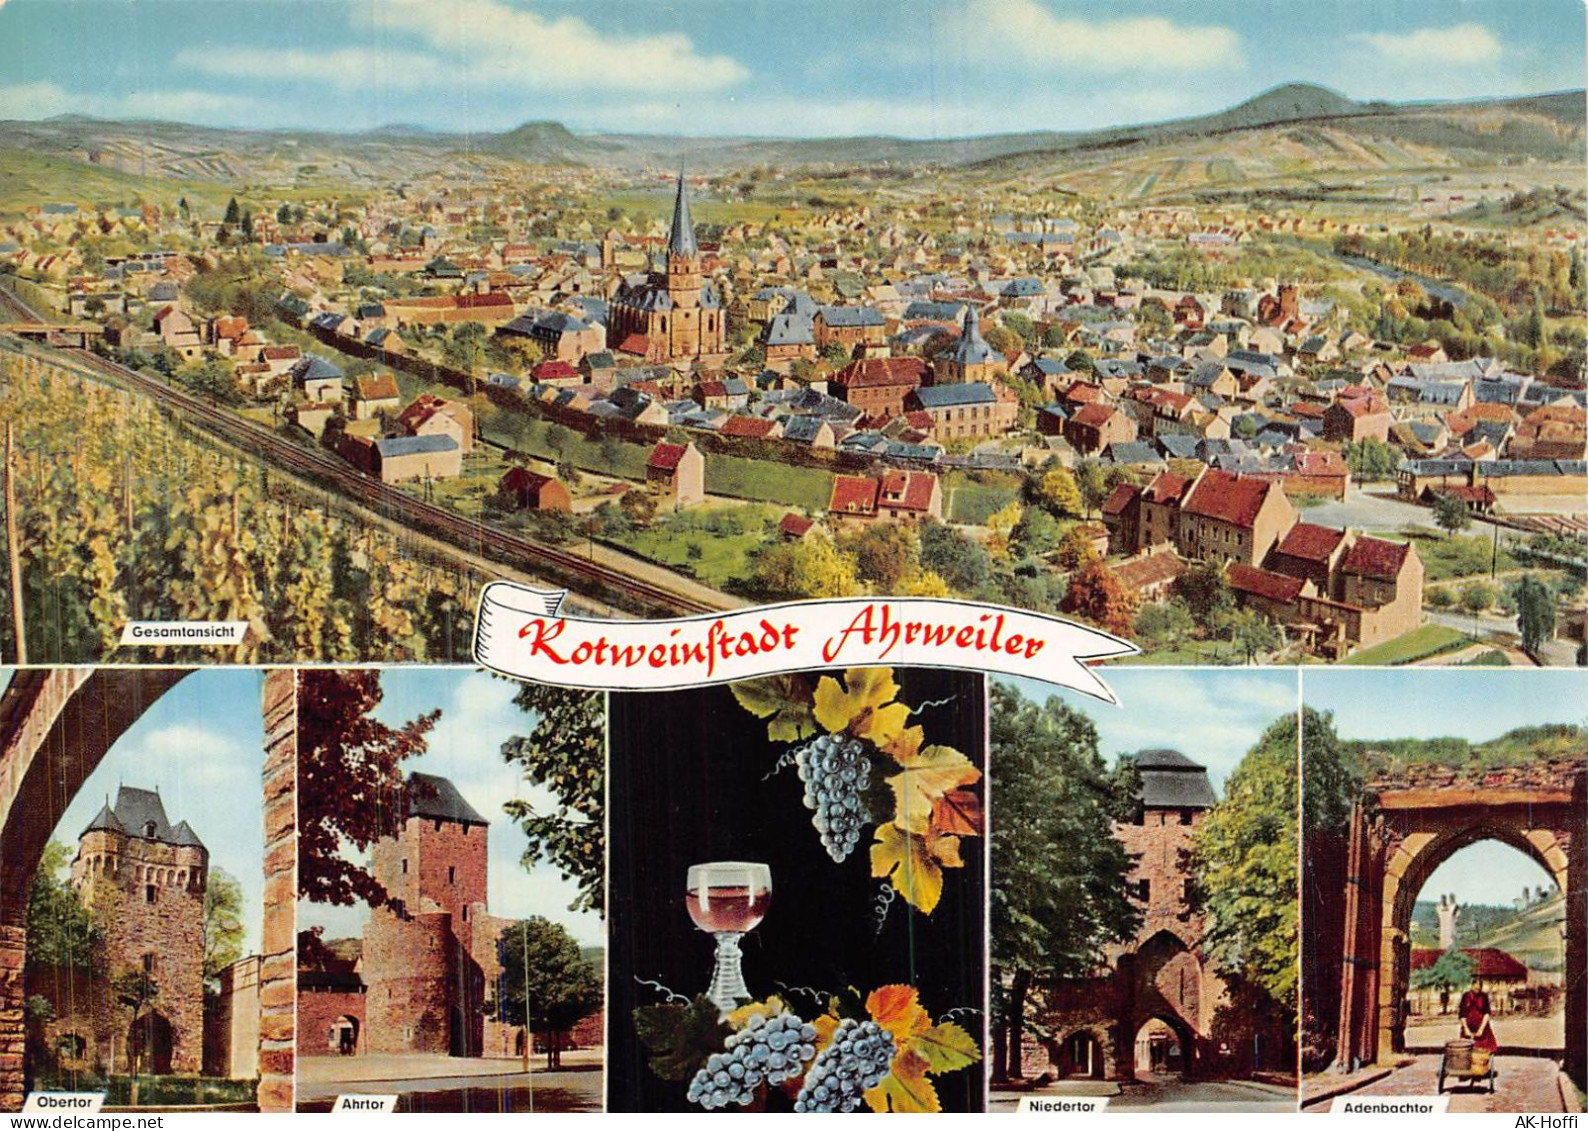 Rotweinstadt Ahrweiler – Obertor, Niedertorverschiedene Ansichten - Bad Neuenahr-Ahrweiler